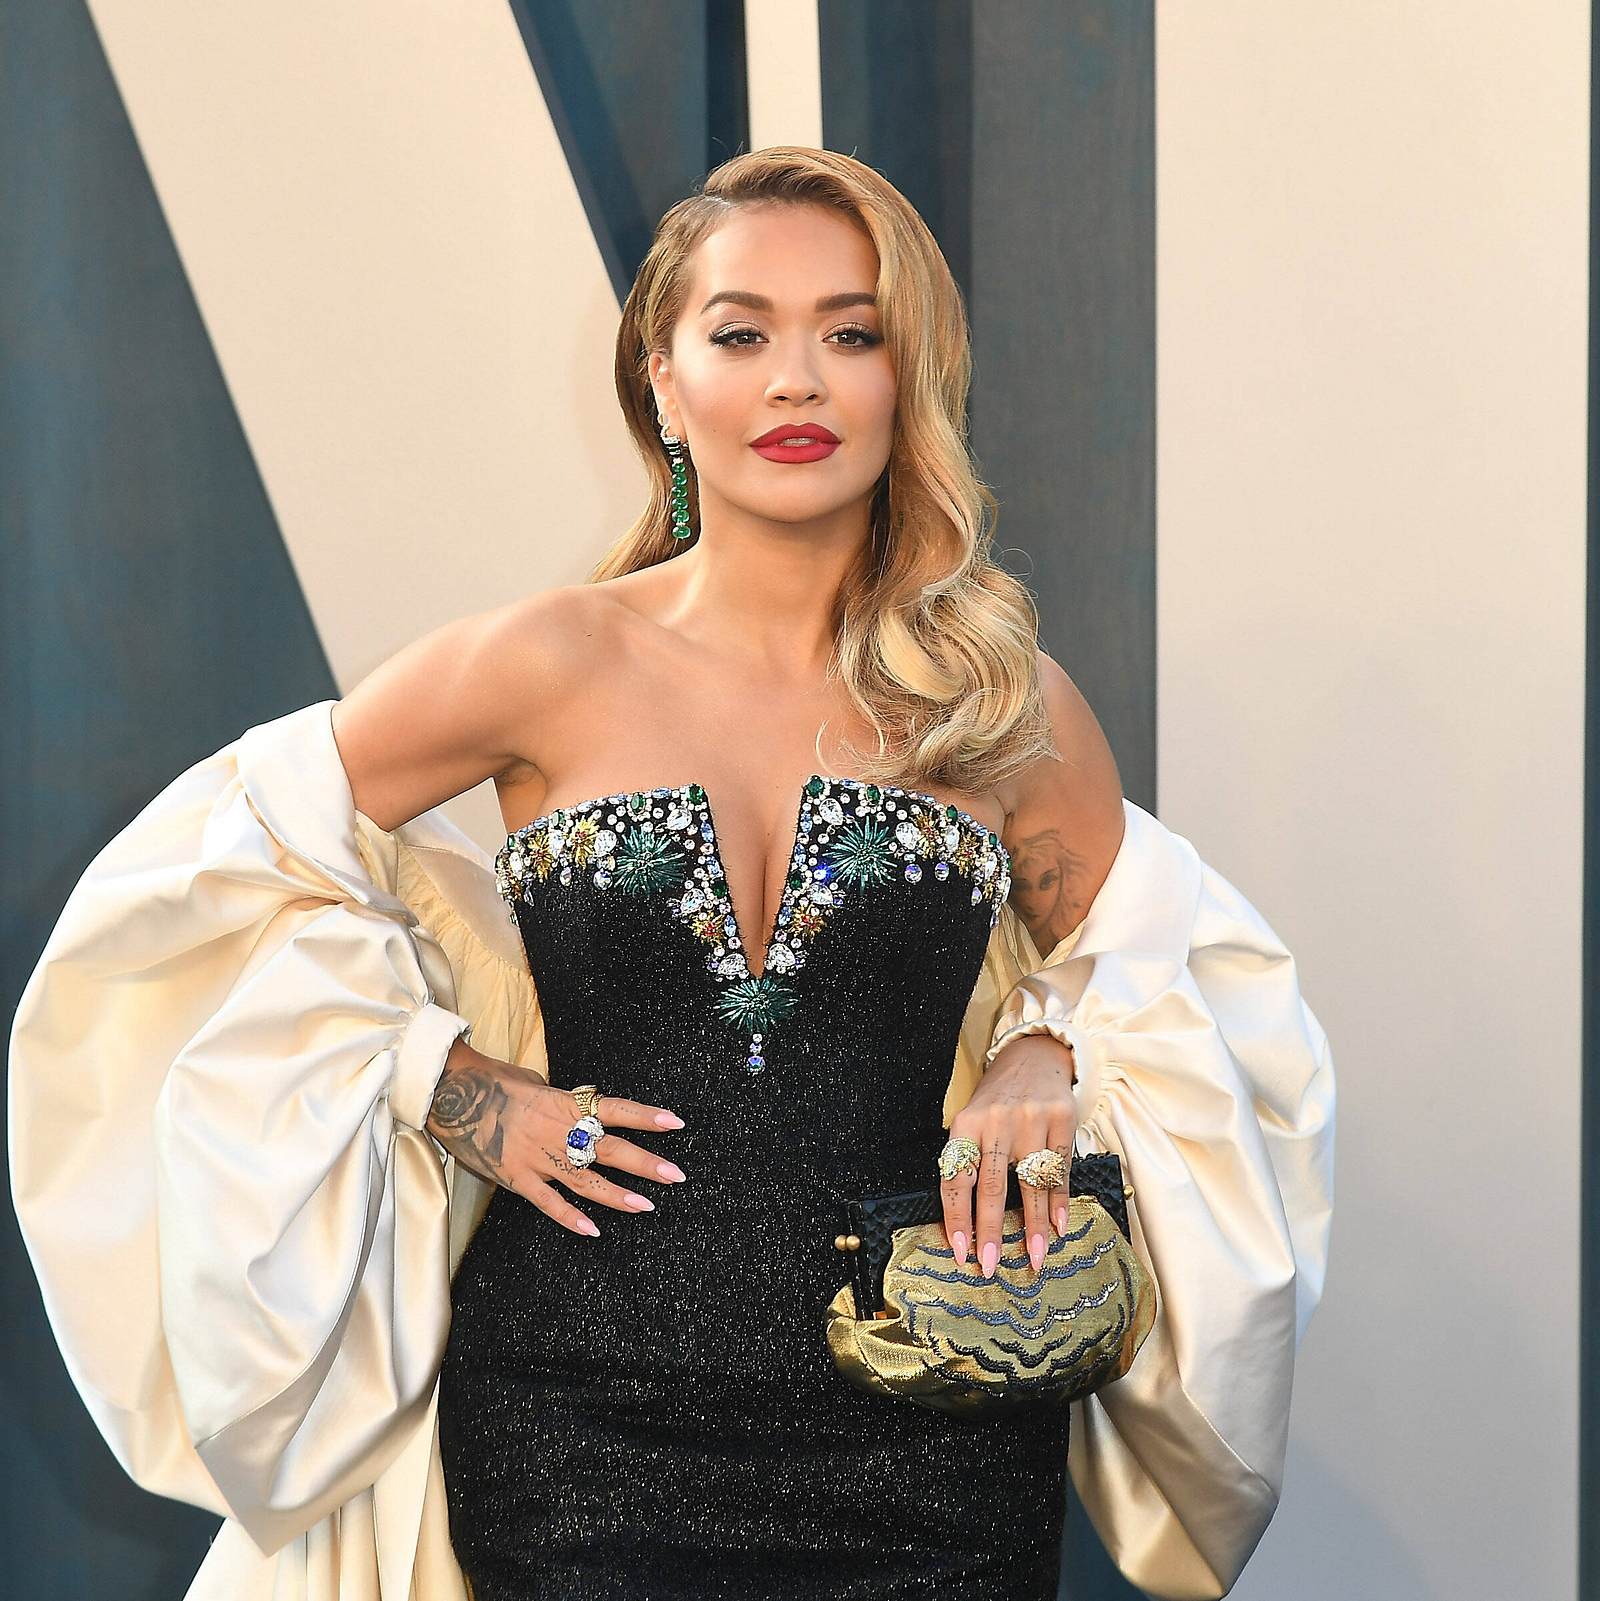 Starreifes Haar-Styling zum Discountpreis: Mit den günstigen Stylingtools  von Superstar Rita Ora | Wunderweib